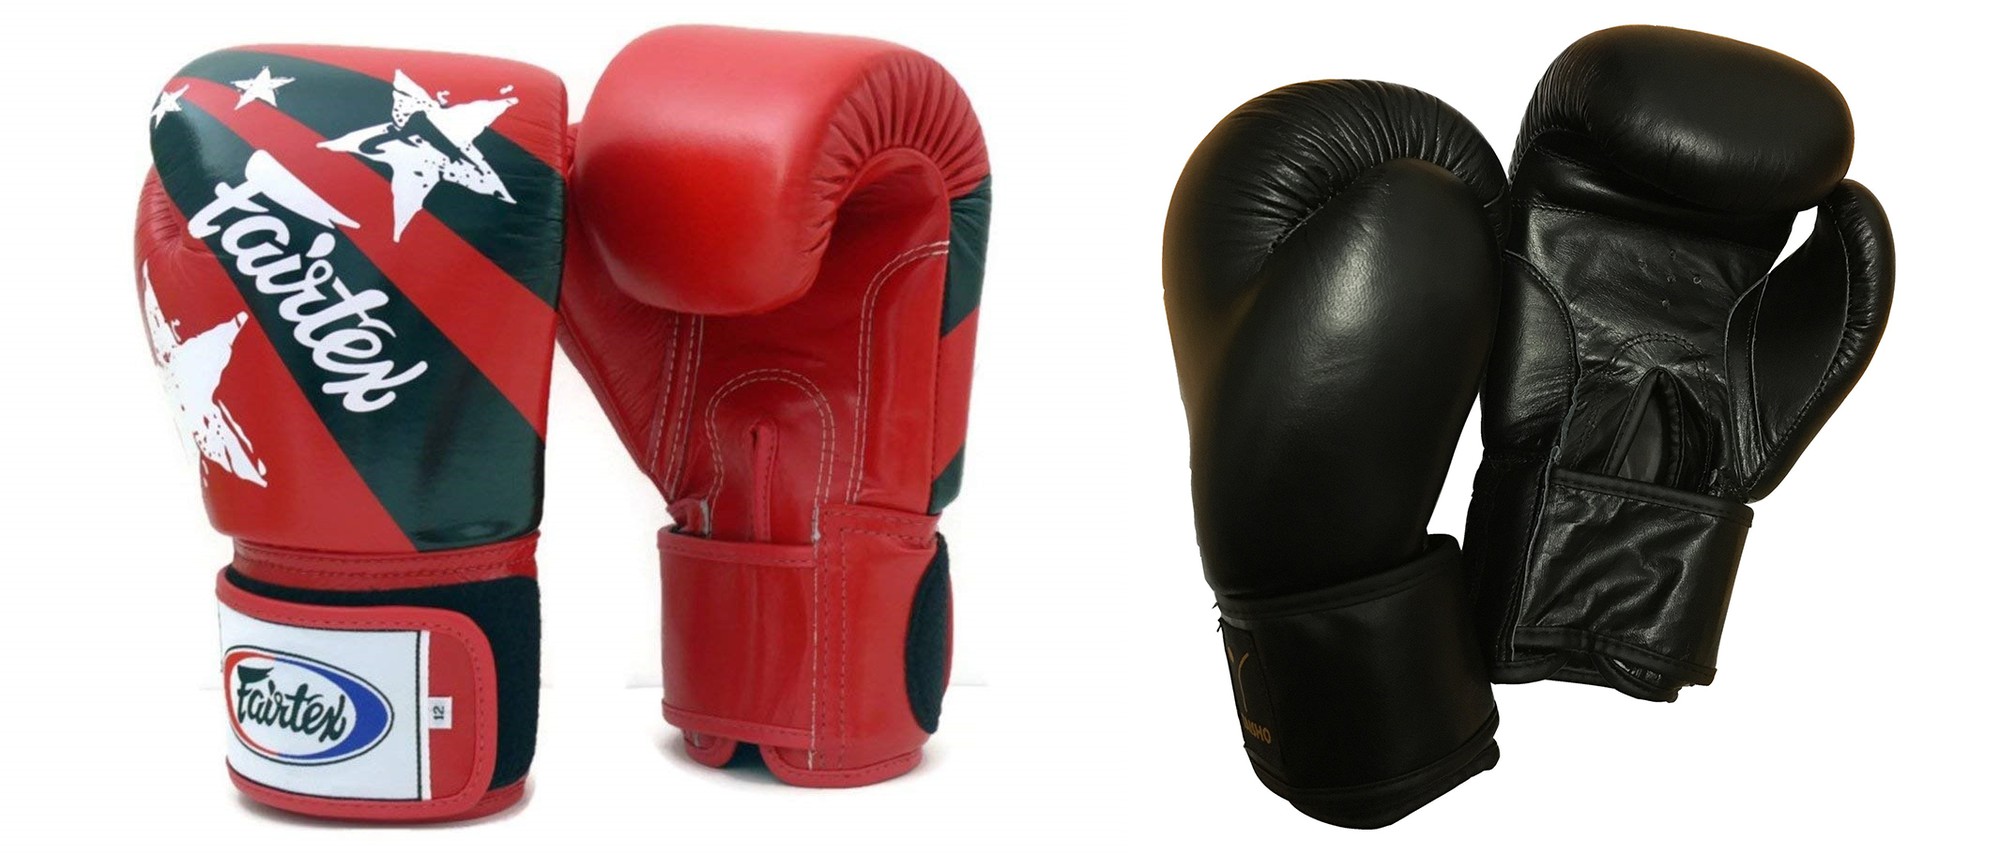 Những điểm khác biệt giữa găng Boxing và găng Muay - Ảnh 2.